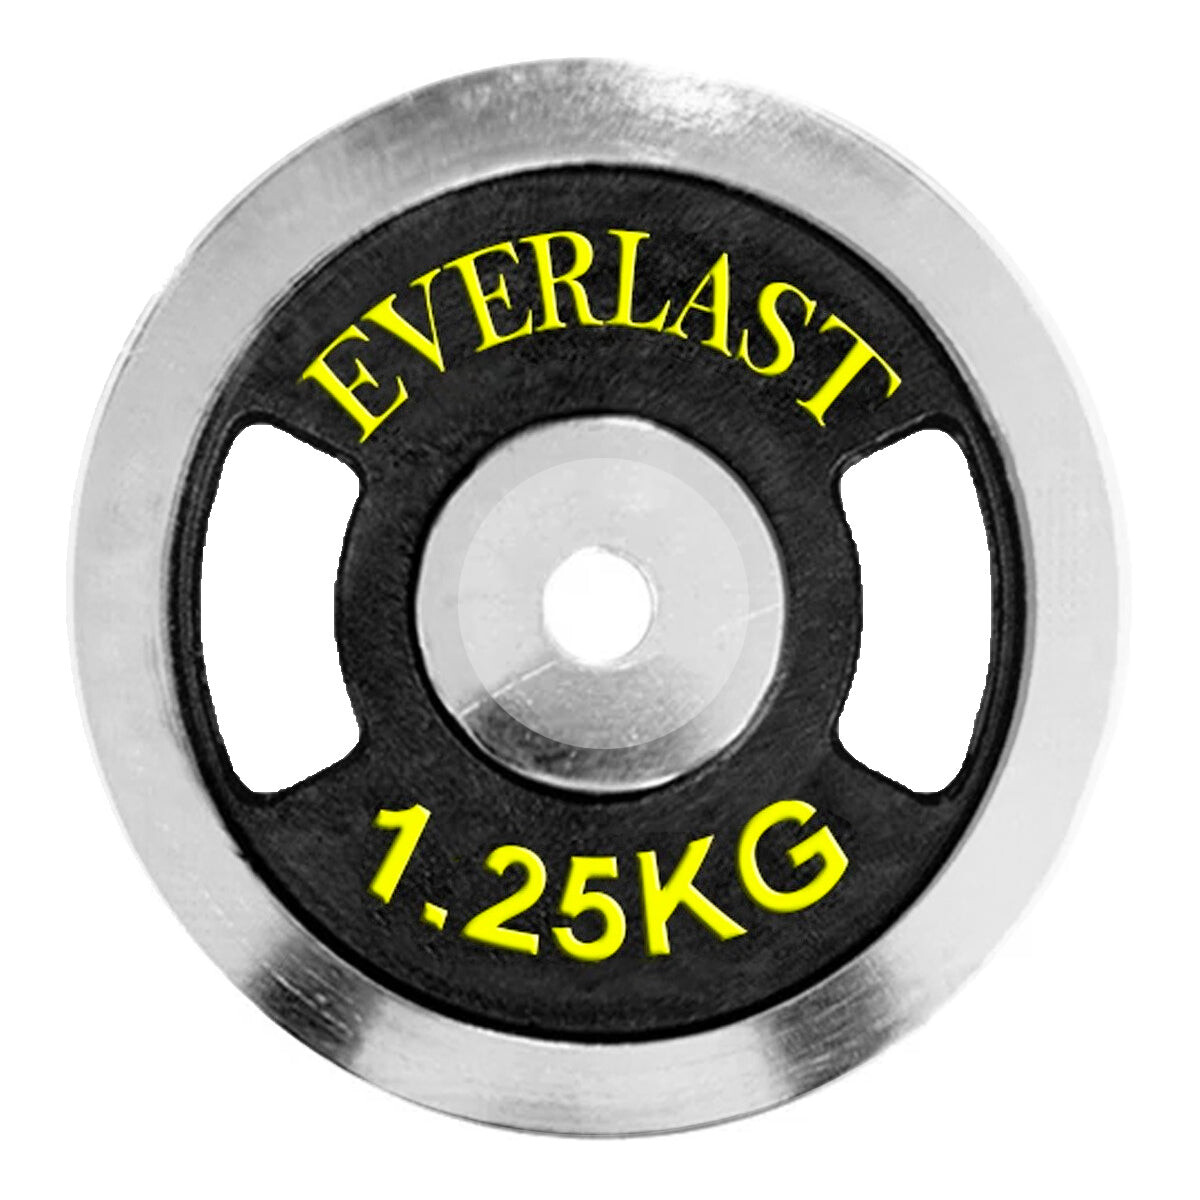 Disco Everlast En Hierro Cromado 1.25kg Importados 